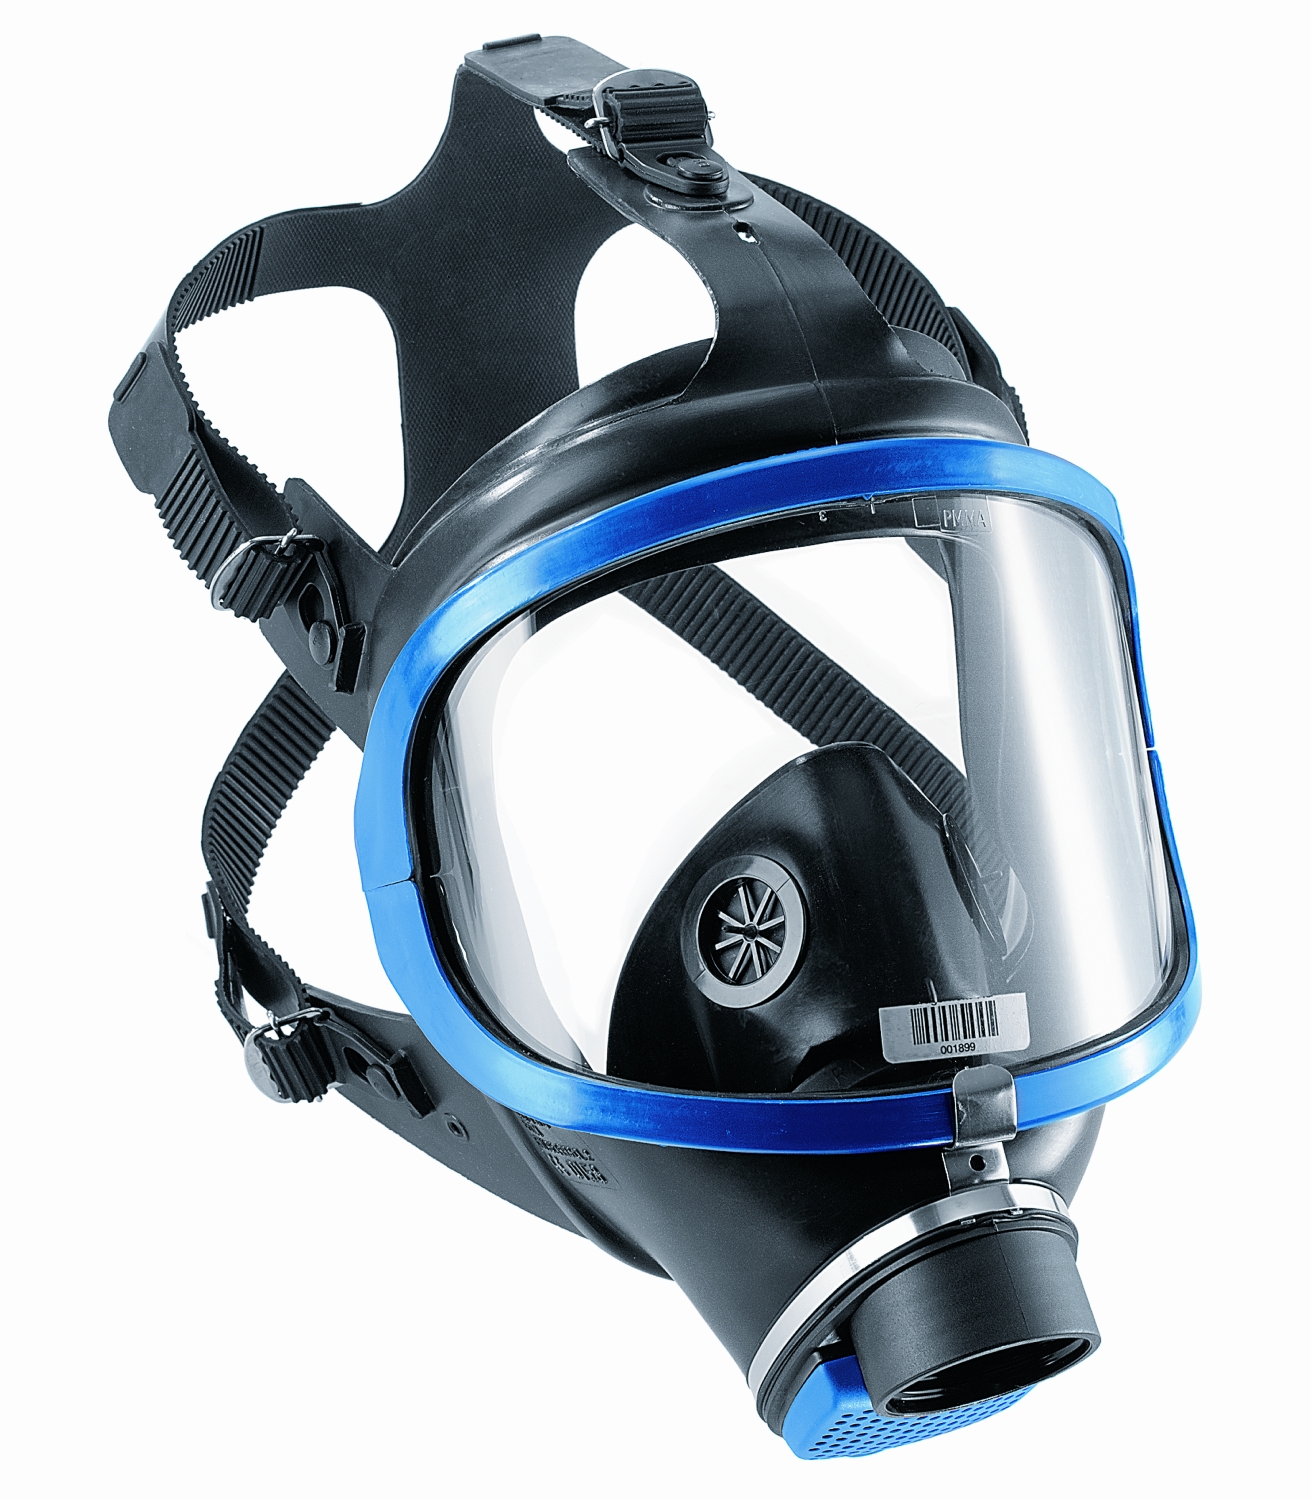  Masque complet réutilisable mono-filtre X-plore 6300 